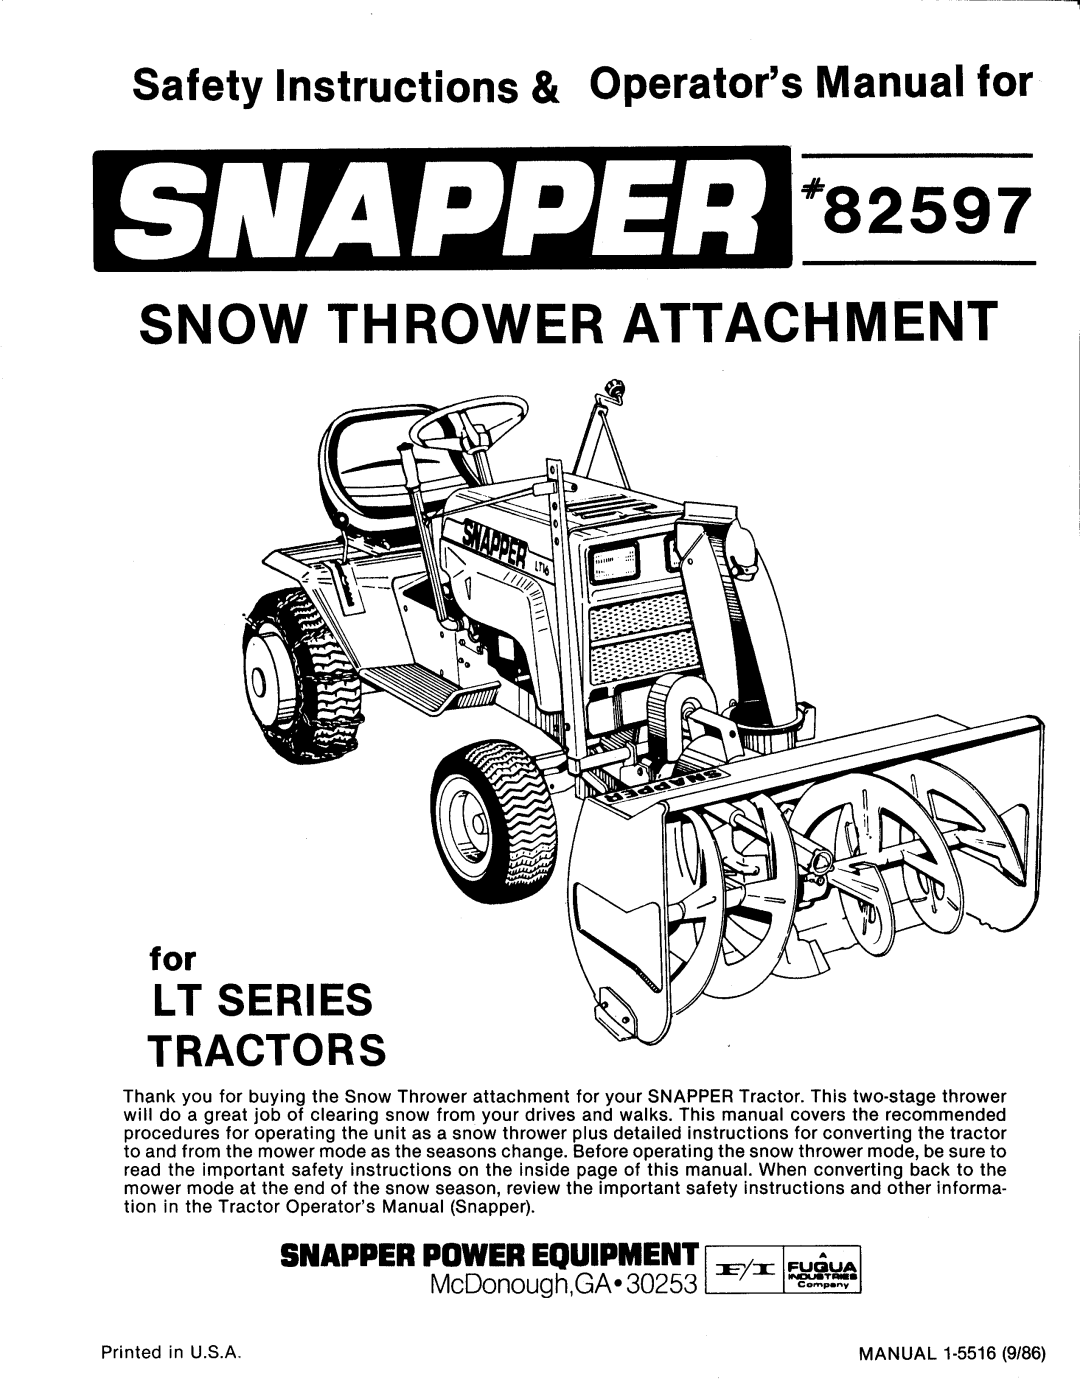 Snapper 82597 manual 